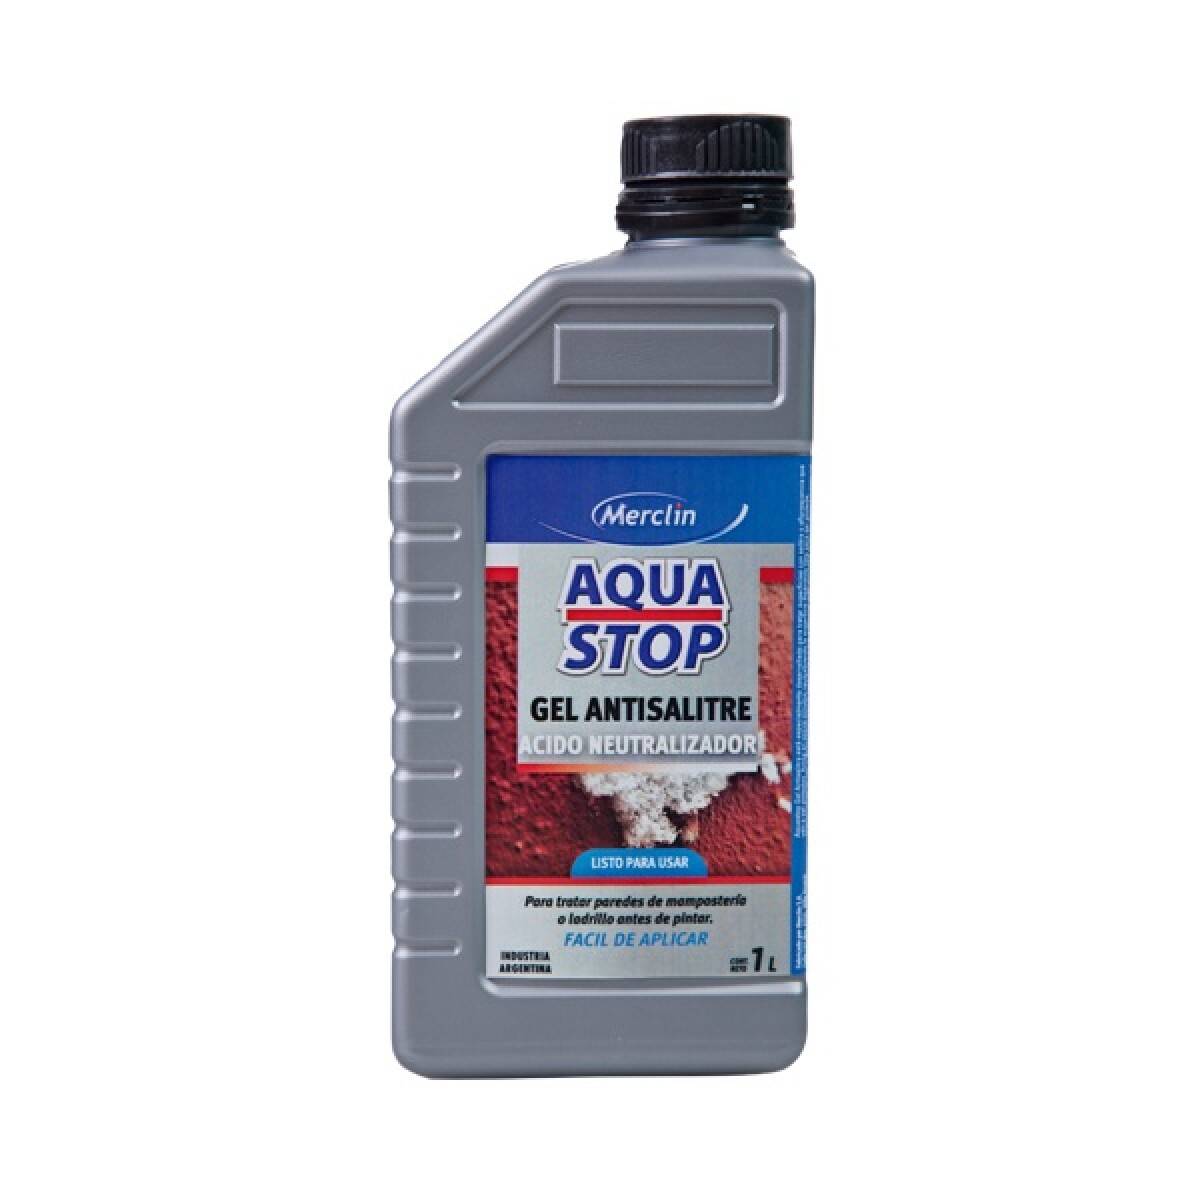 Aquastop Gel Antisalitre Merclin 1L 